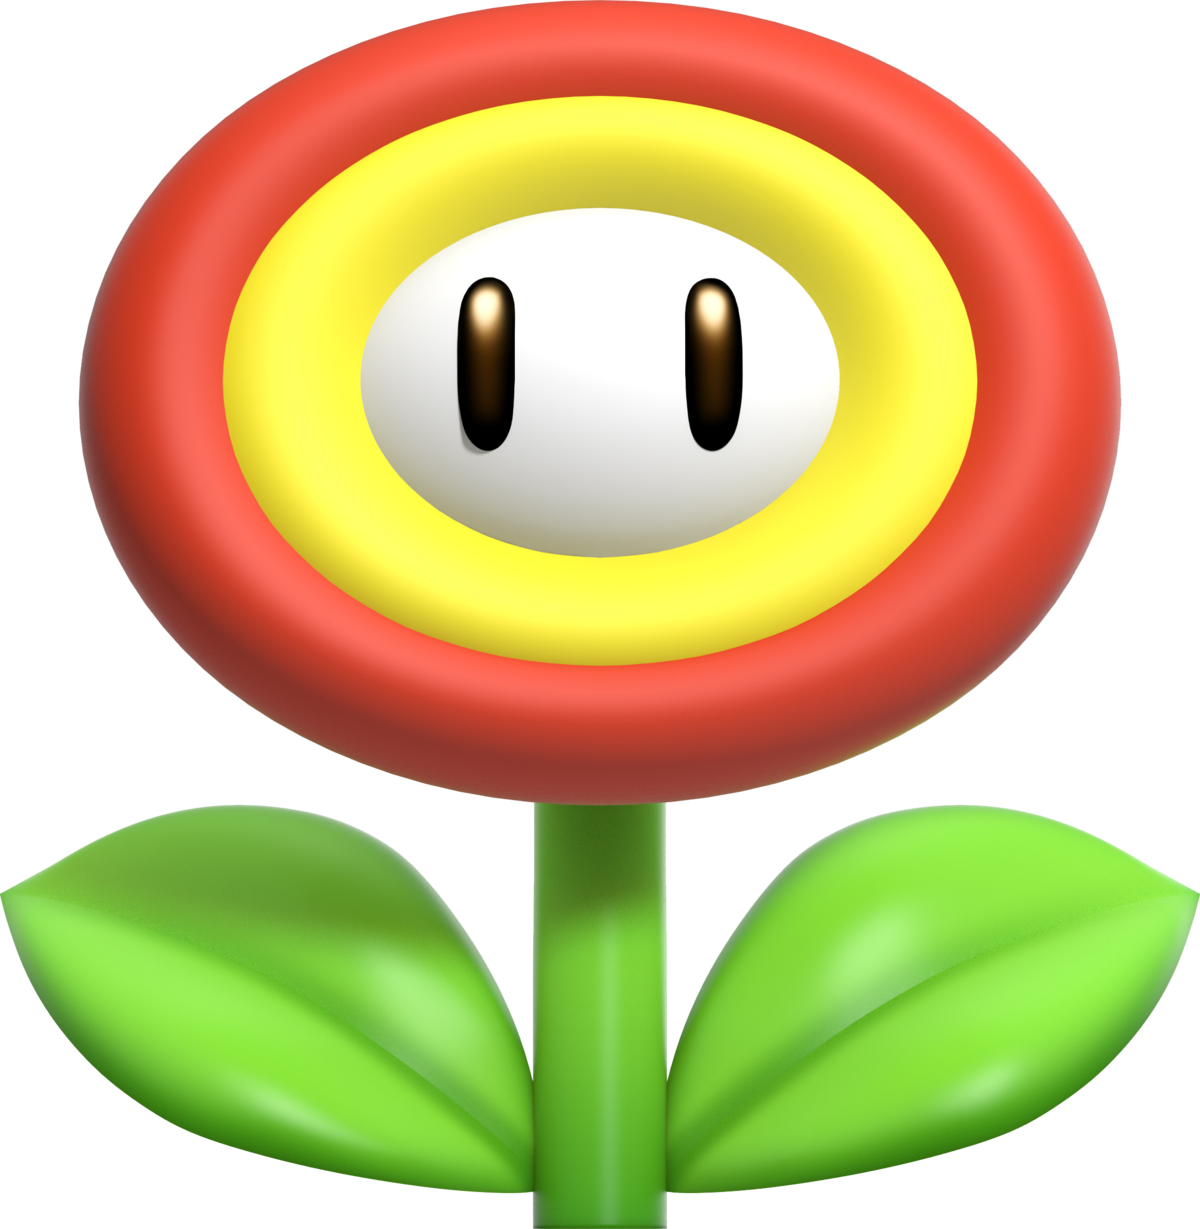 Fire Flower Super Mario Wiki The Mario Encyclopedia